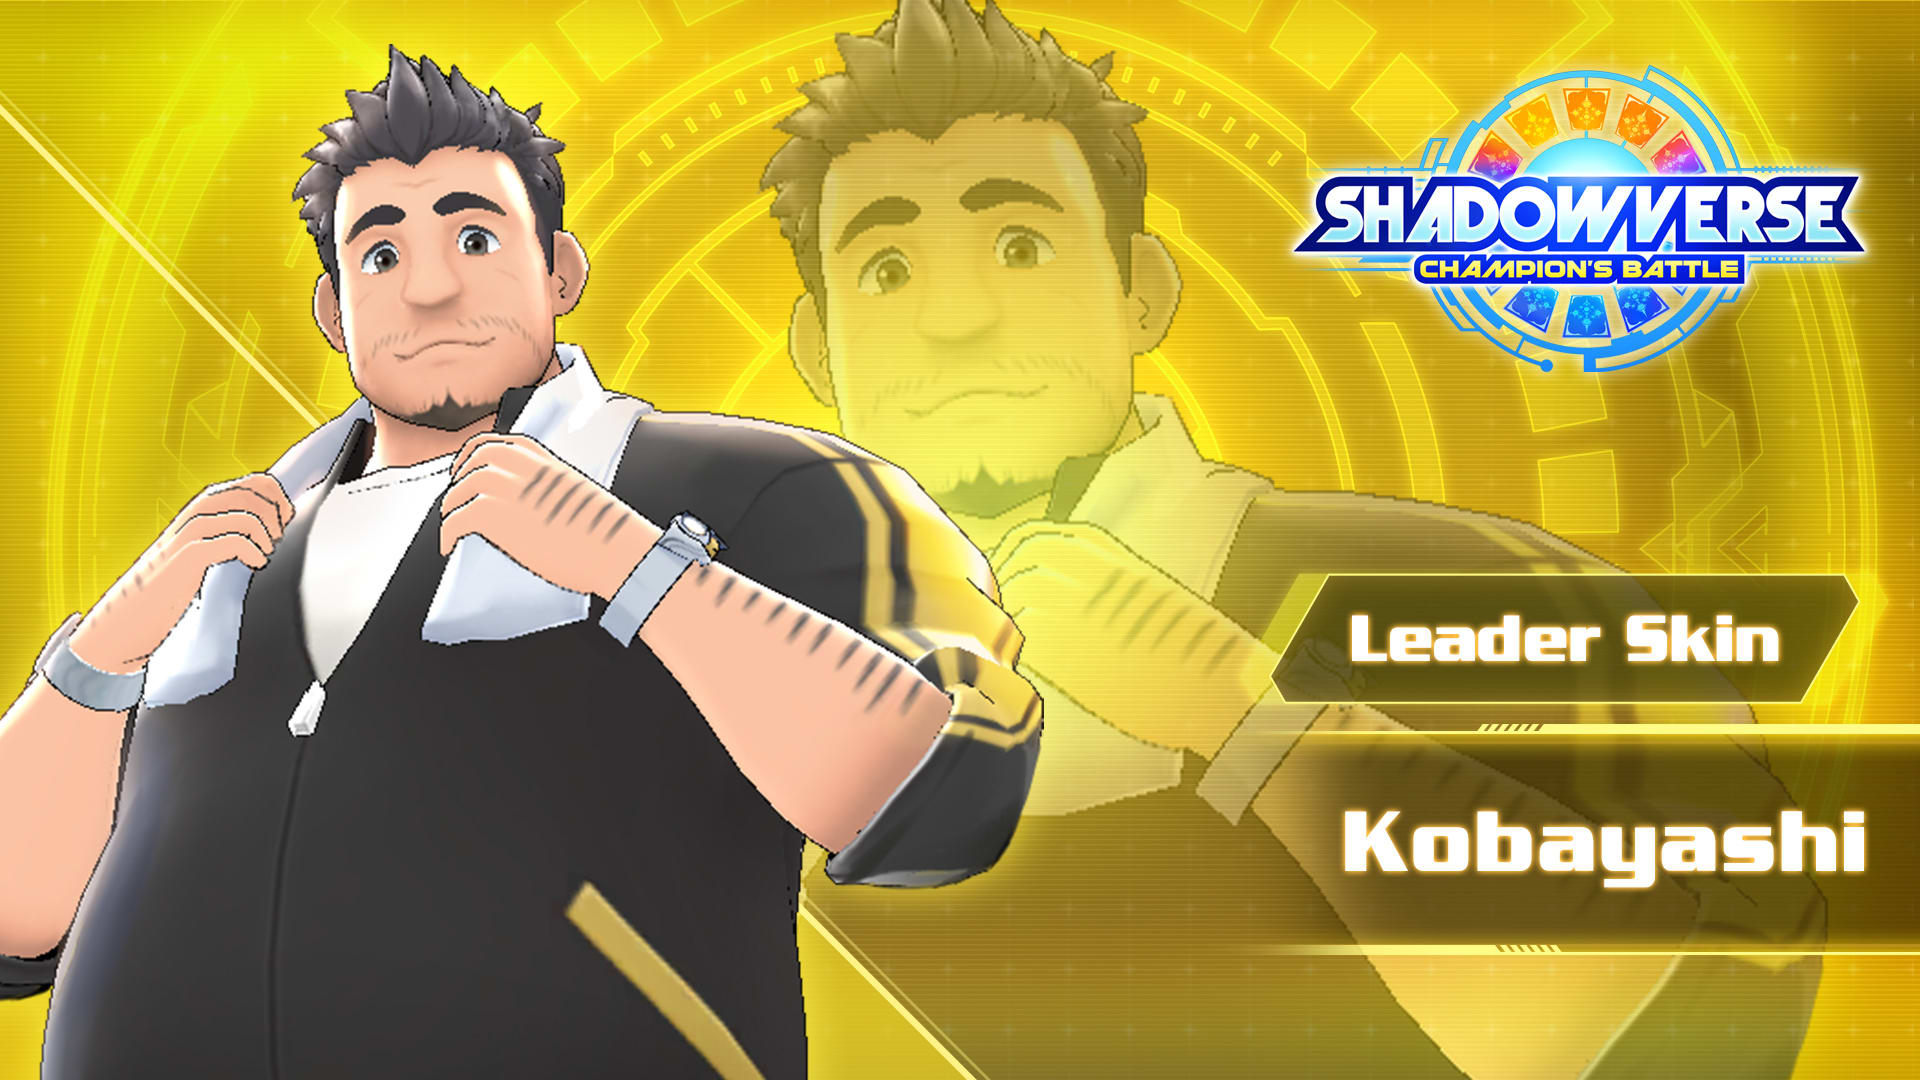 Leader Skin: "Kobayashi"